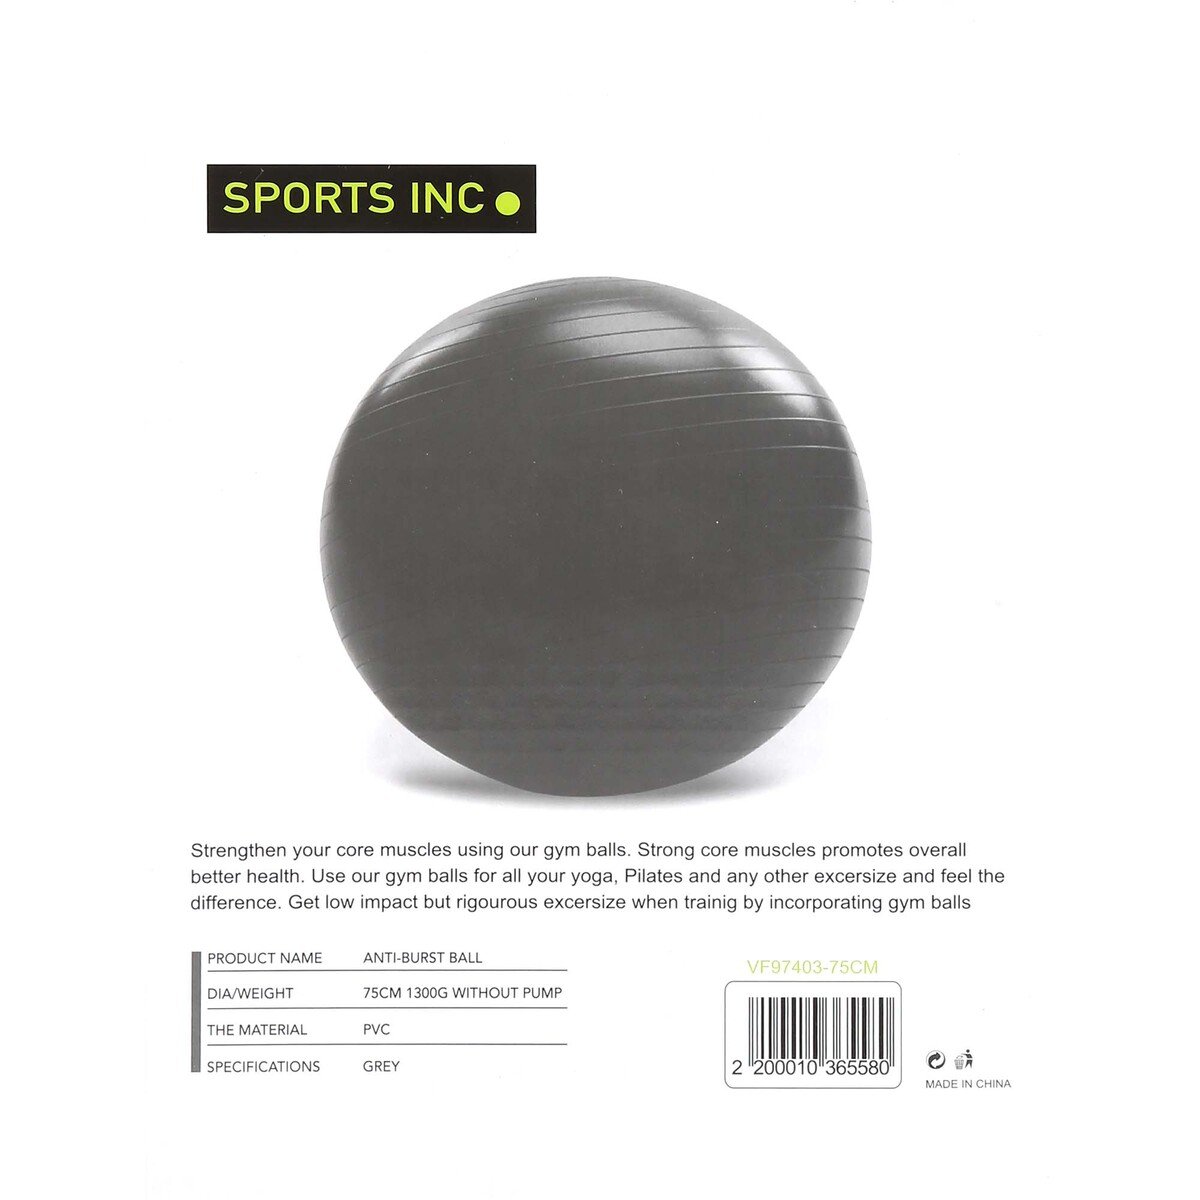 Sports INC Gym Ball VF97403 75cm